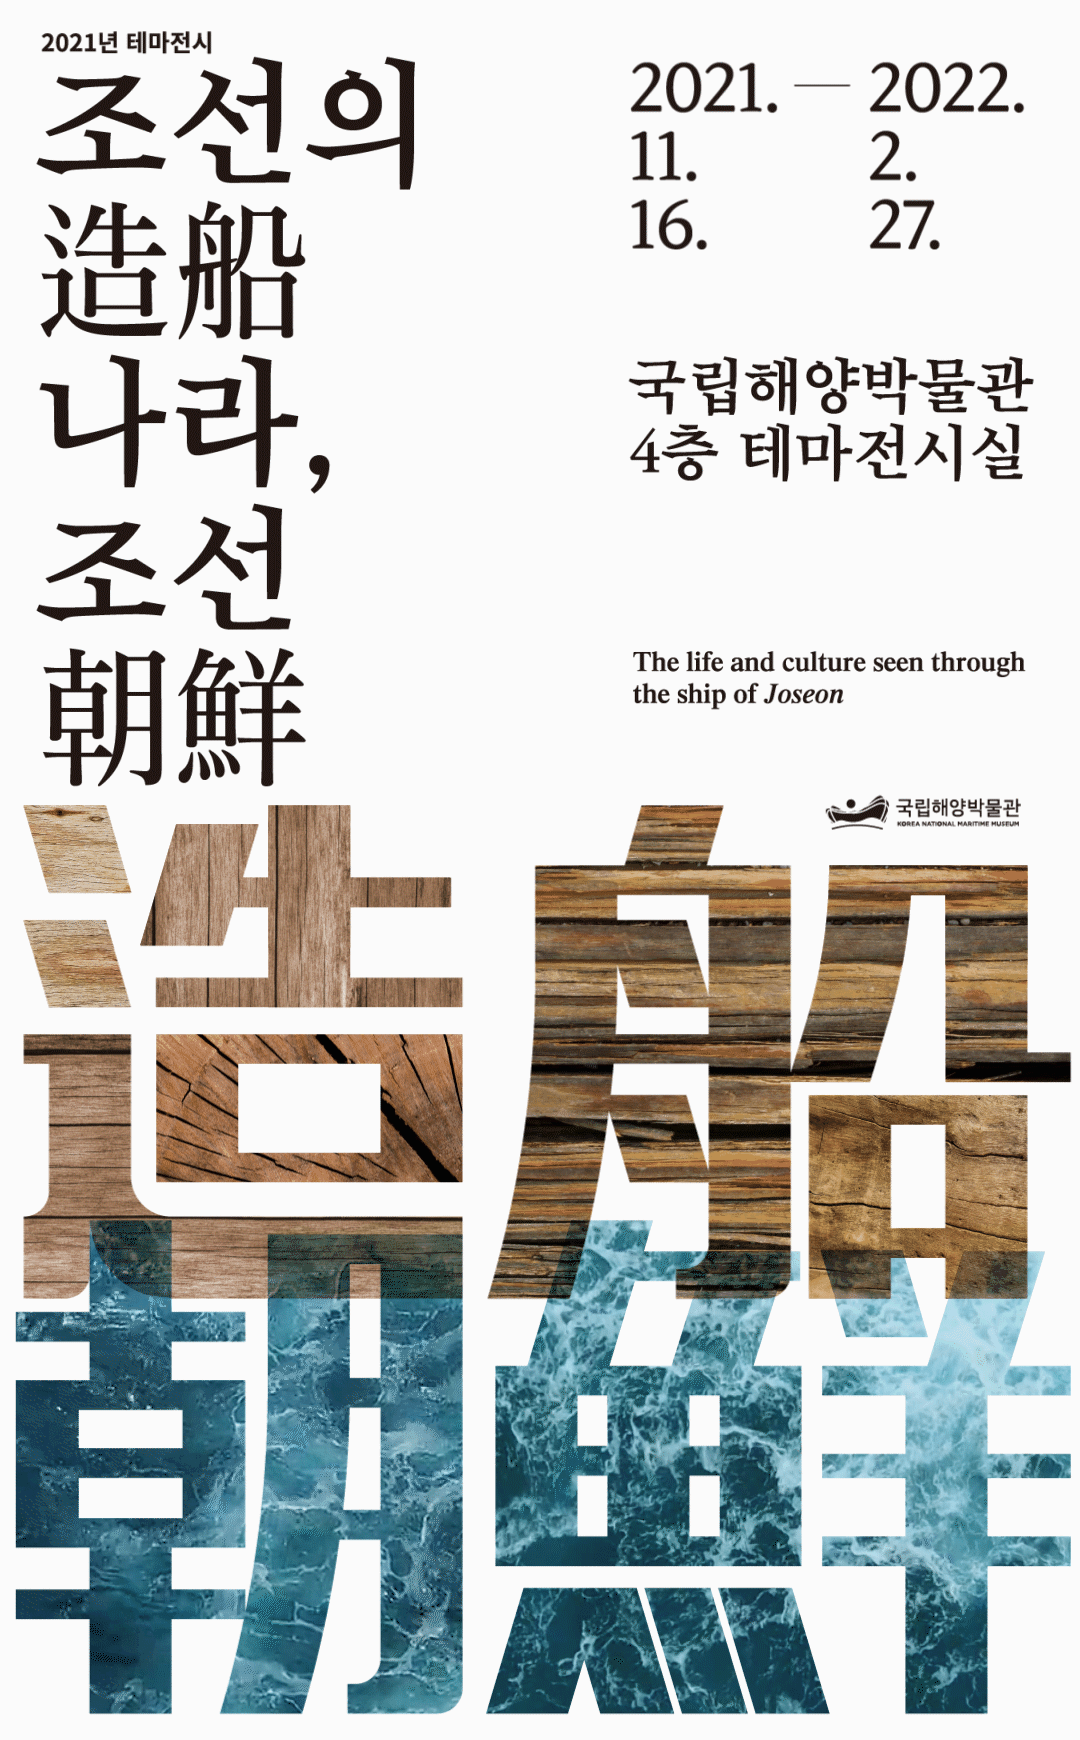 2021 테마전시 조선(造船)의 나라, 조선(朝鮮) 포스터. 전시일정은 2021년 11월 16일부터 2022년 2월 27일까지 국립해양박물관 4층 테마전시실에서 진행됩니다. The life and culture seen through the ship of Joseon.